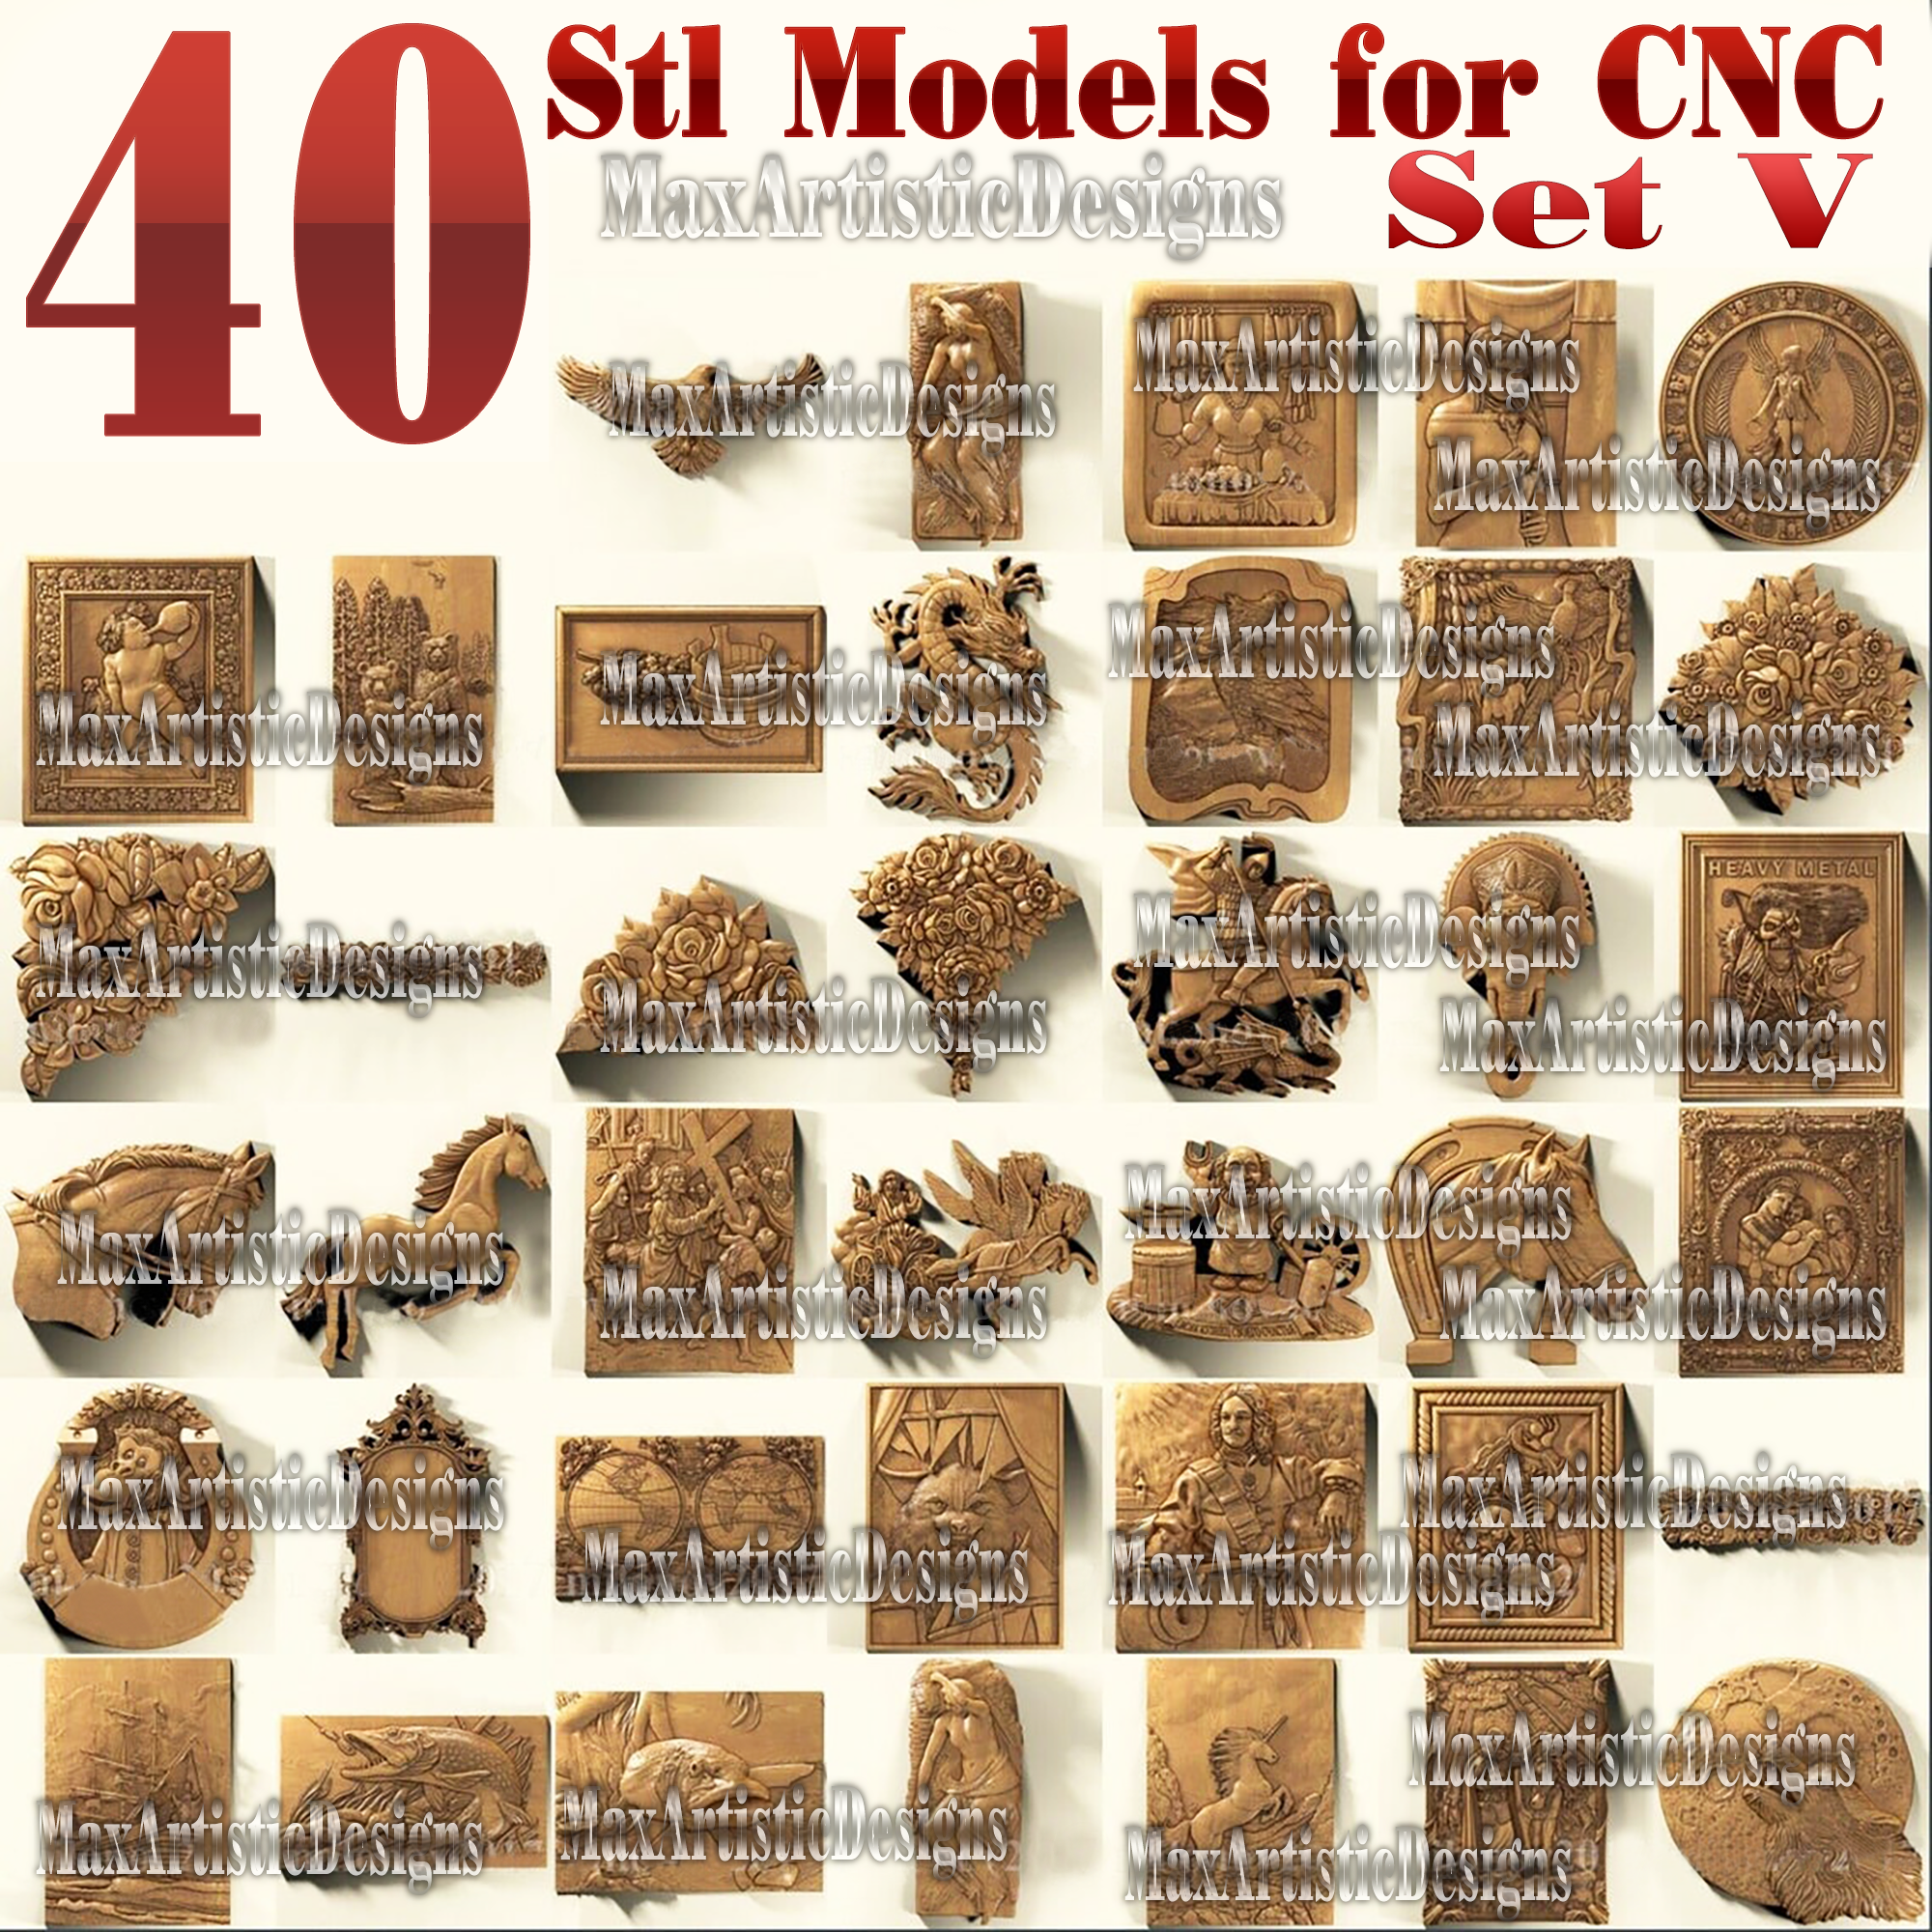 41 piezas 3d stl modelos bajorrelieve trabajo de metal para enrutador cnc artcam aspire set v descargar